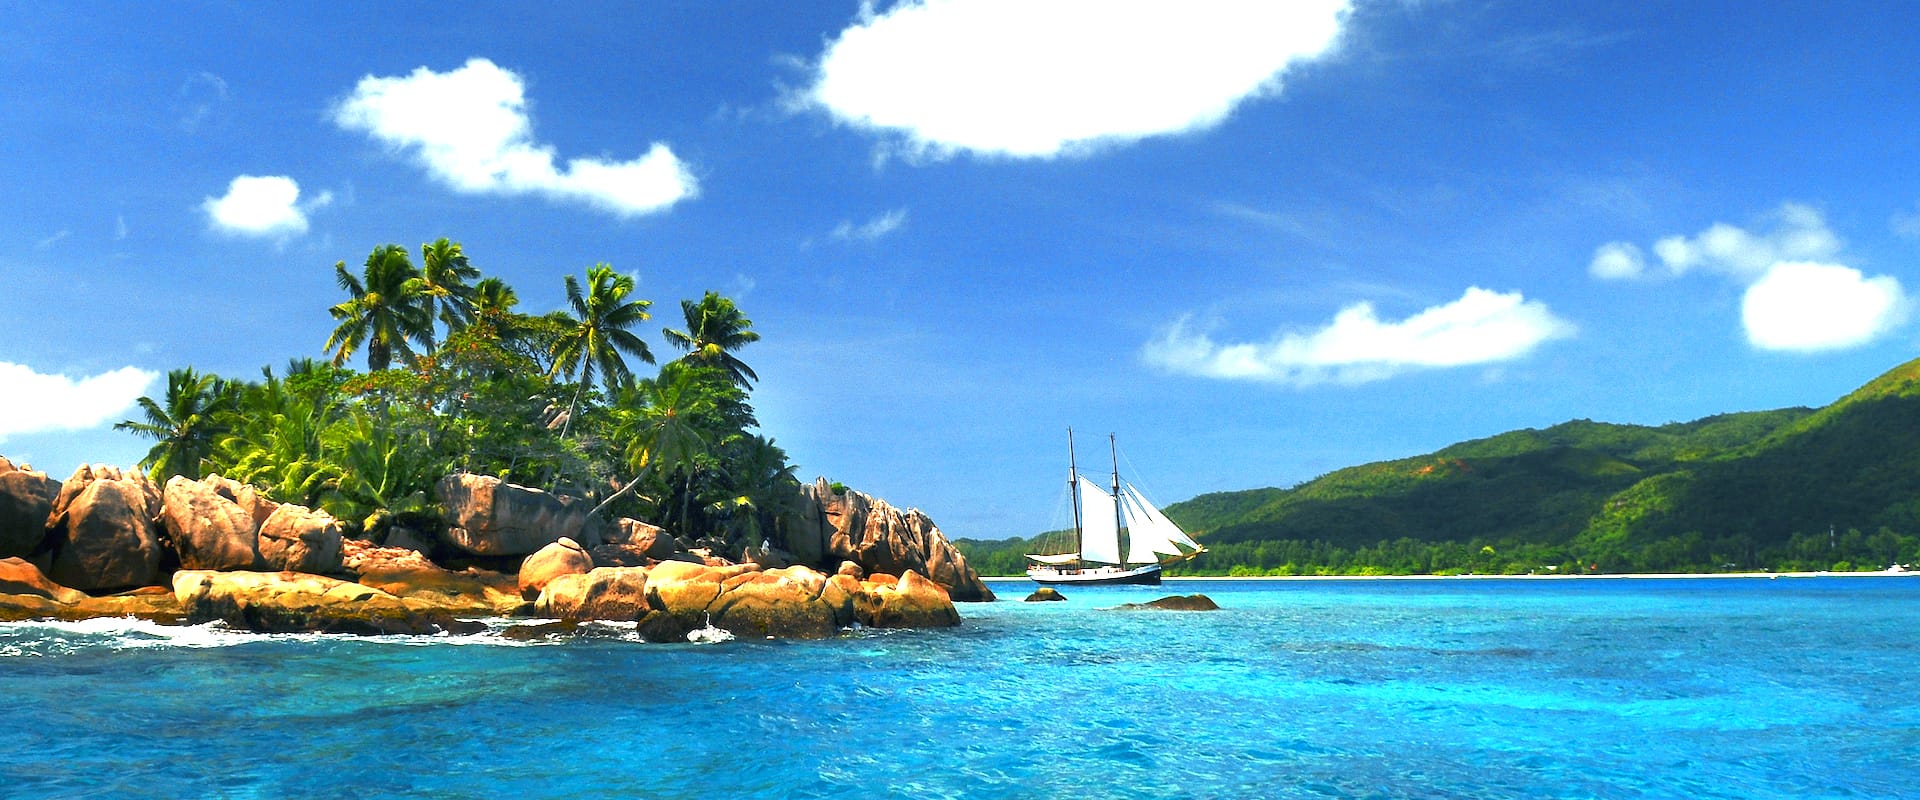 7 Cruceros Vida a Bordo en Seychelles - LiveAboard.com